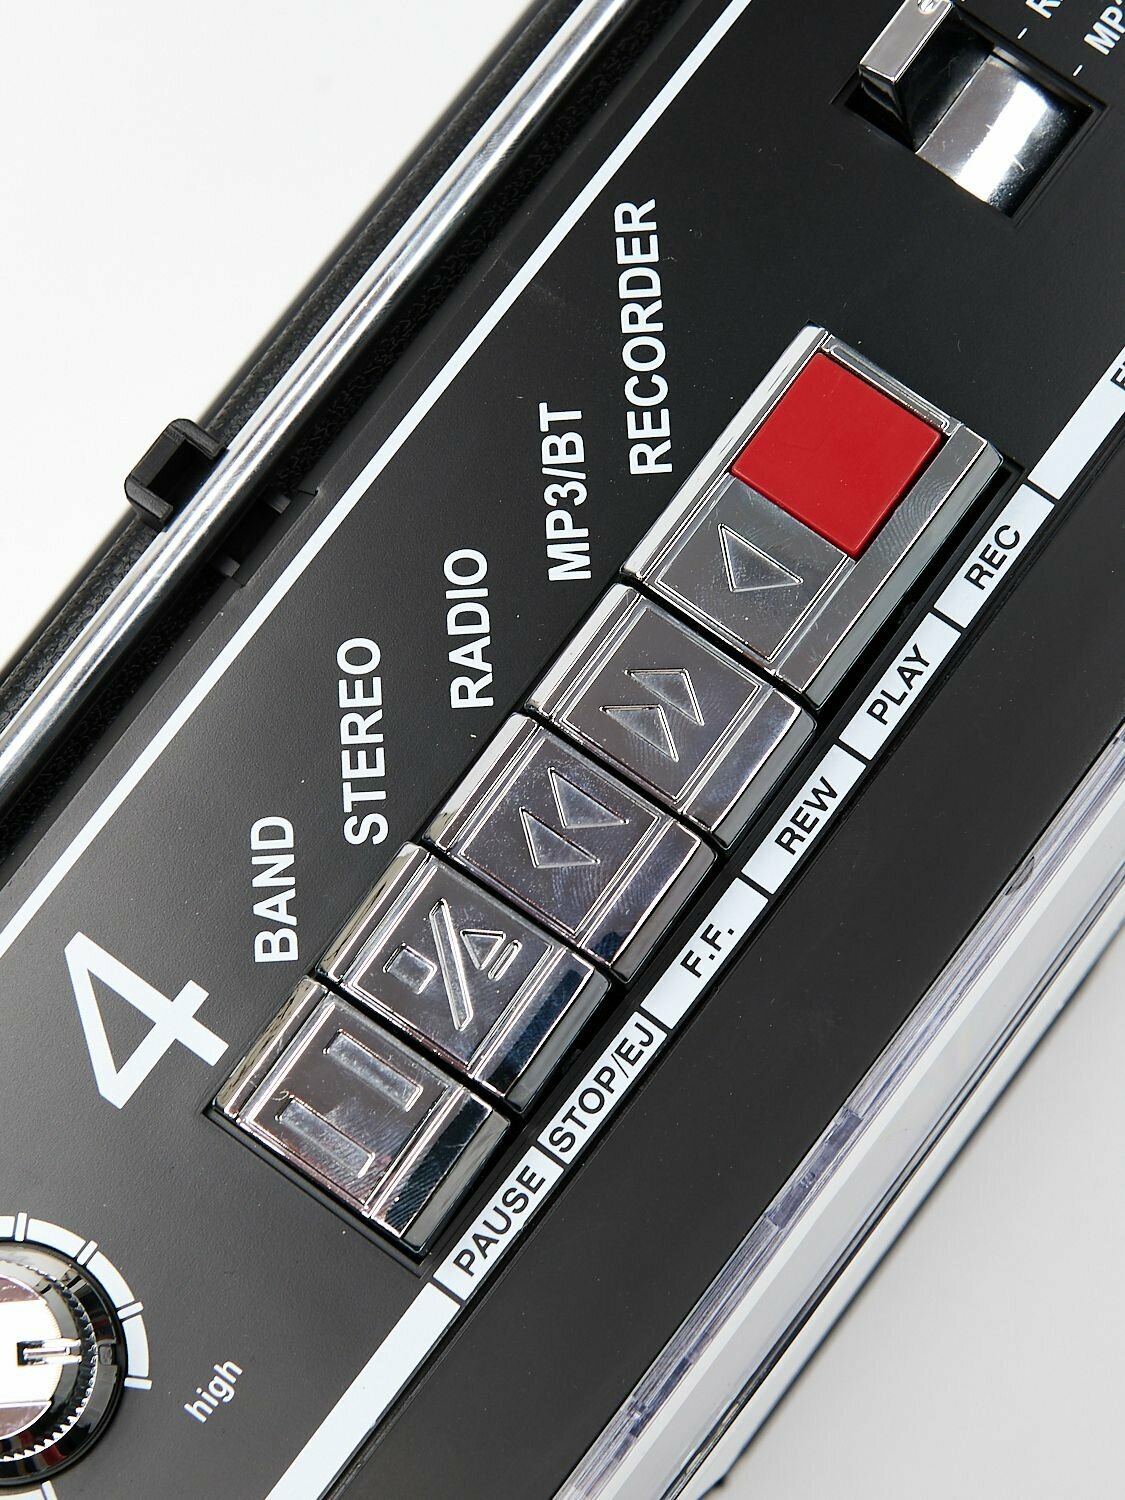 Кассетная магнитола с Bluetooth USB и microSD Hamson HS-8922